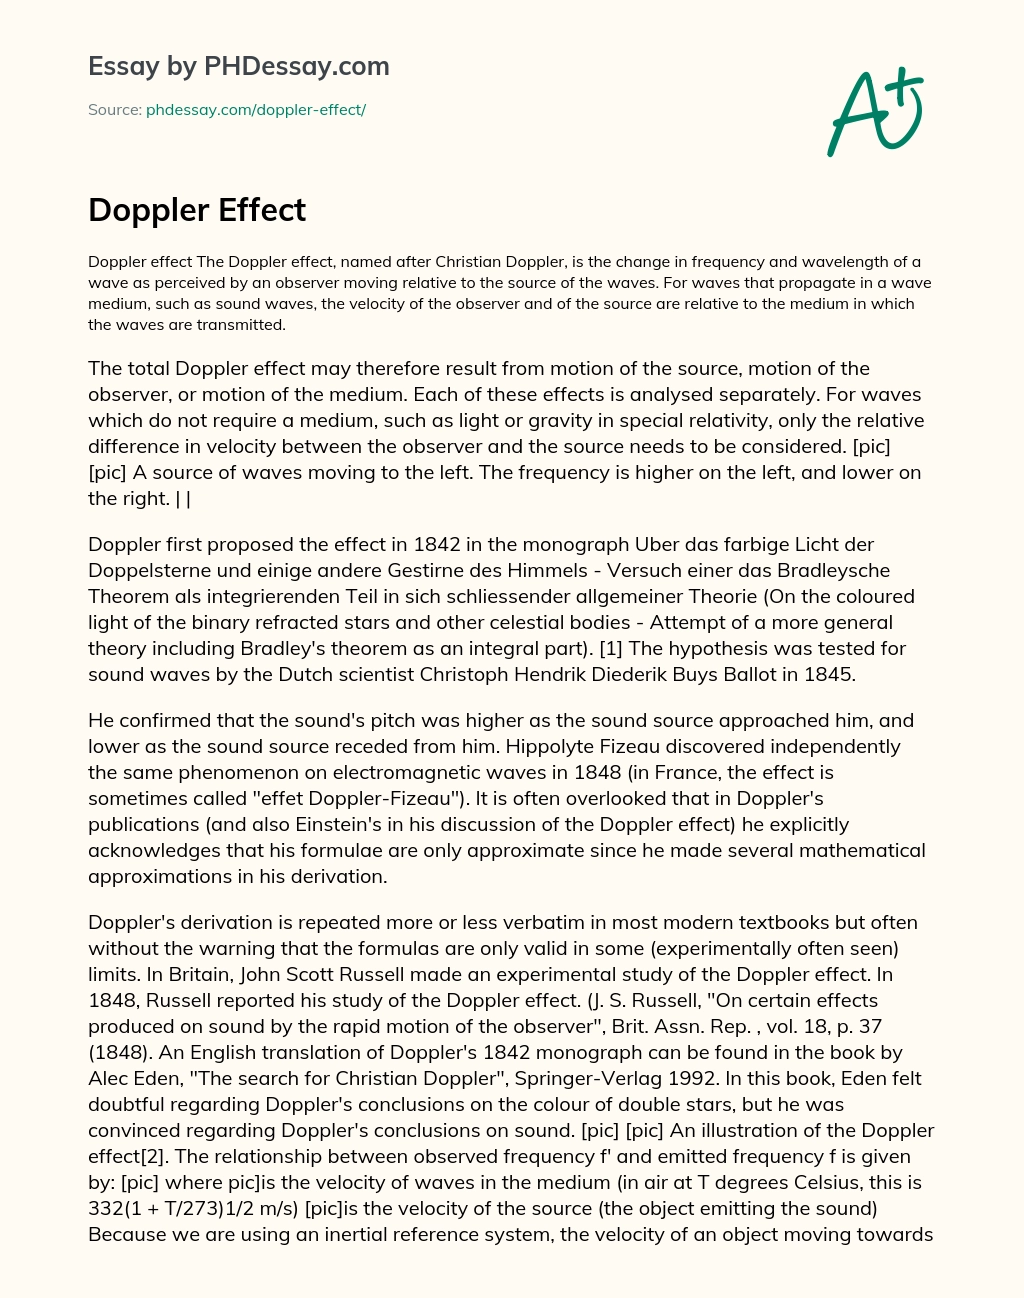 Doppler Effect essay